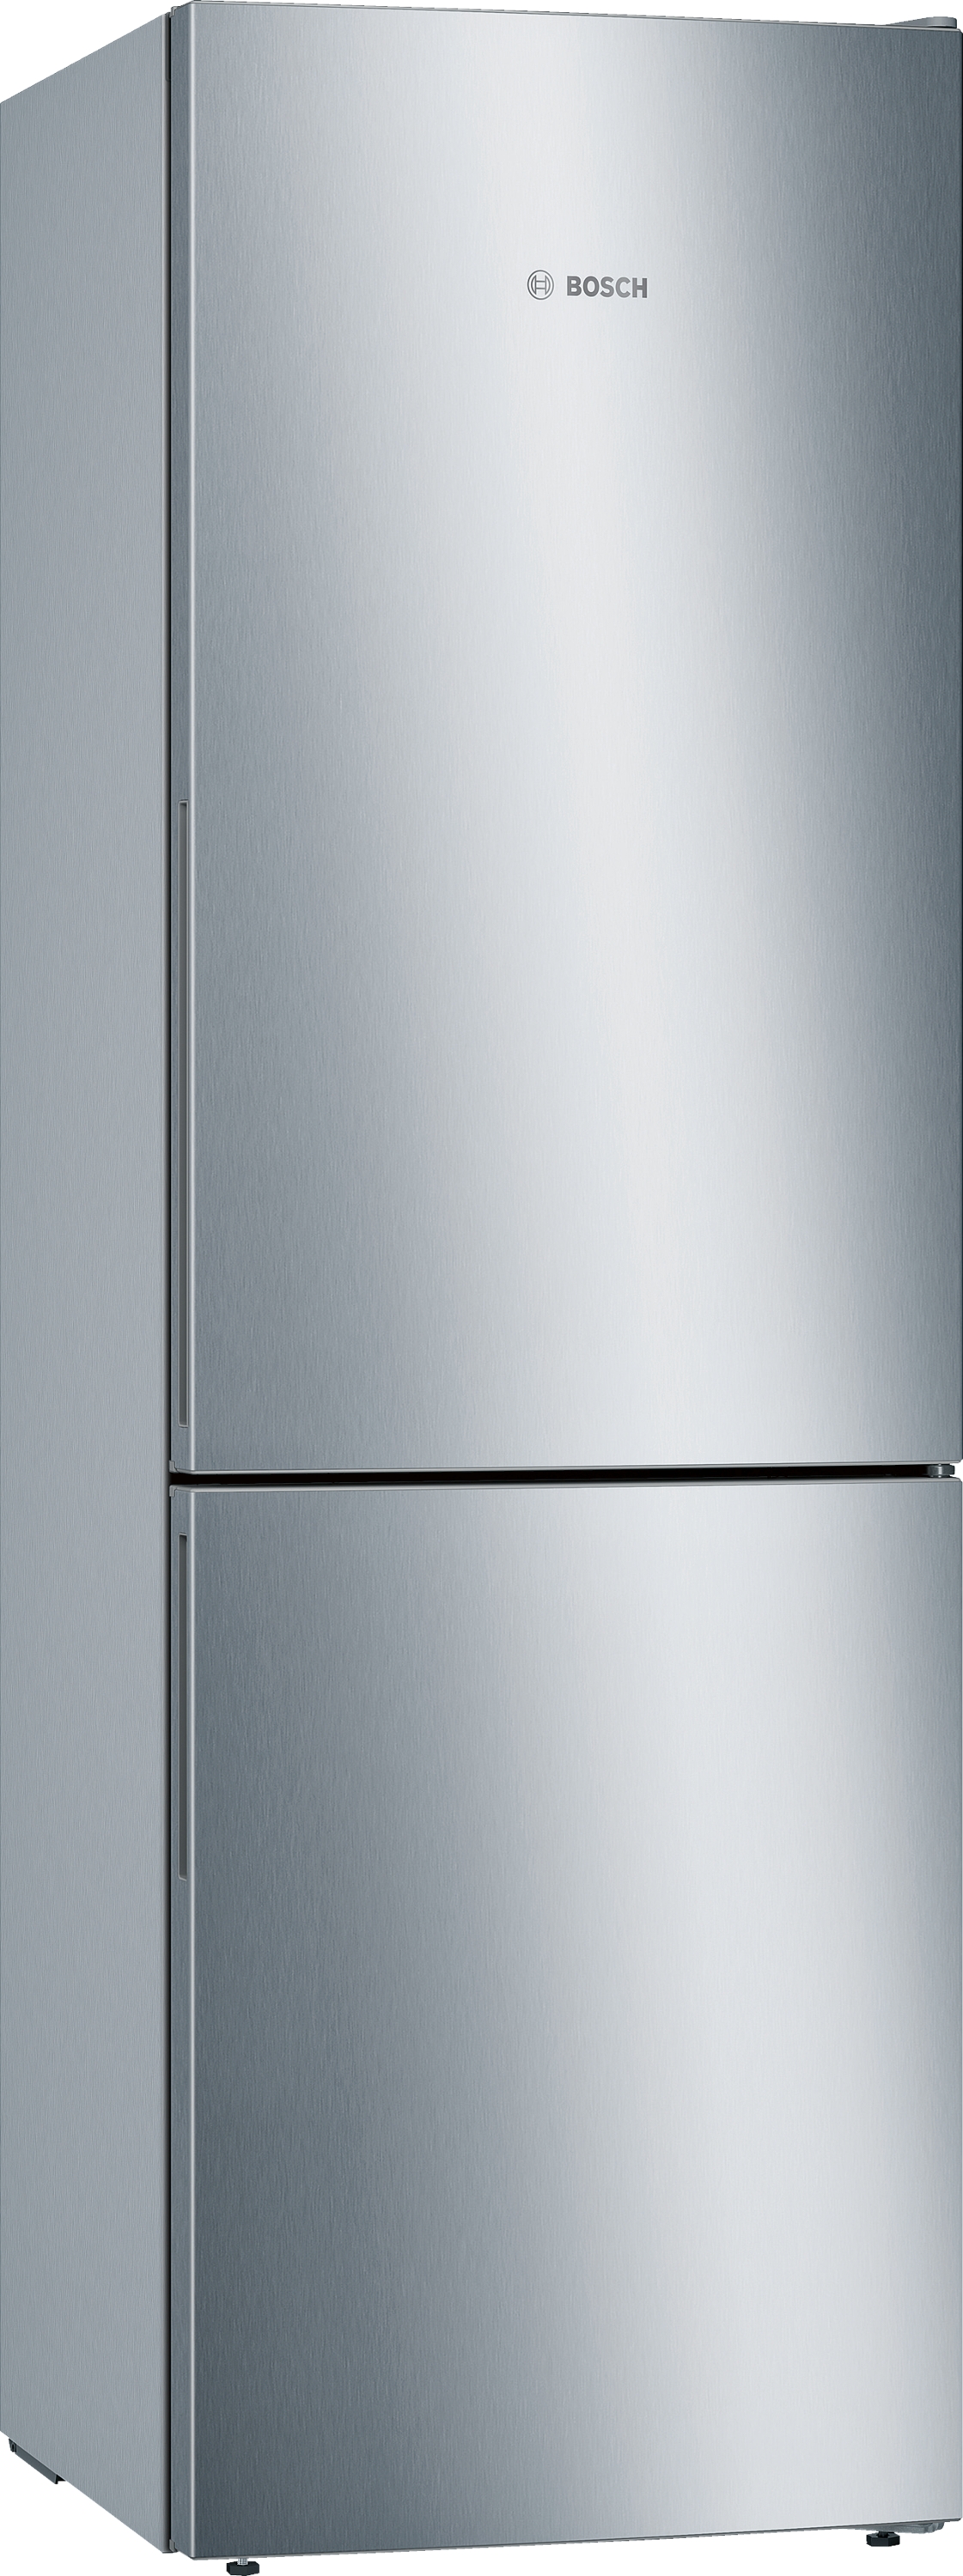 KGE36ALCA Combină frigorifică independentă 186 x 60 cm InoxLook 5 ANI GARANTIE. Clasa Energetica C